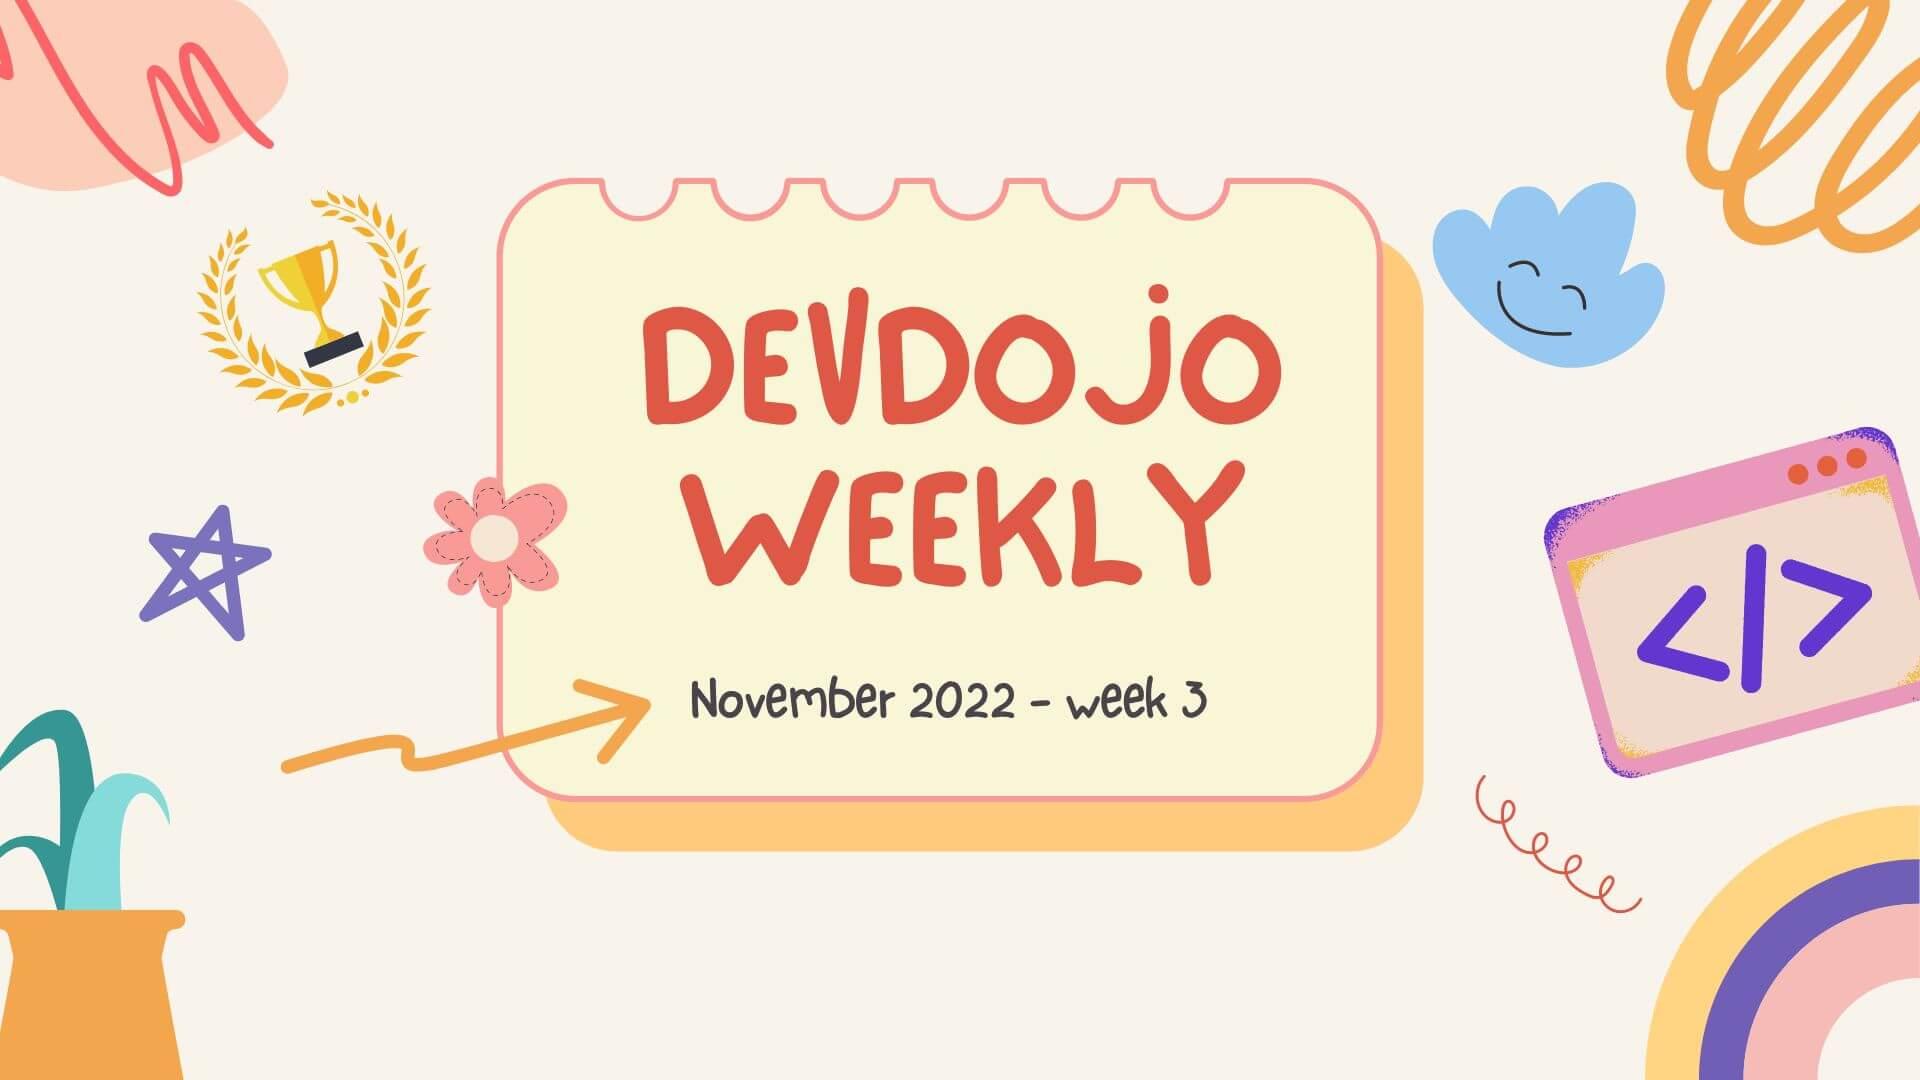 DevDojo Weekly - Nov 2022